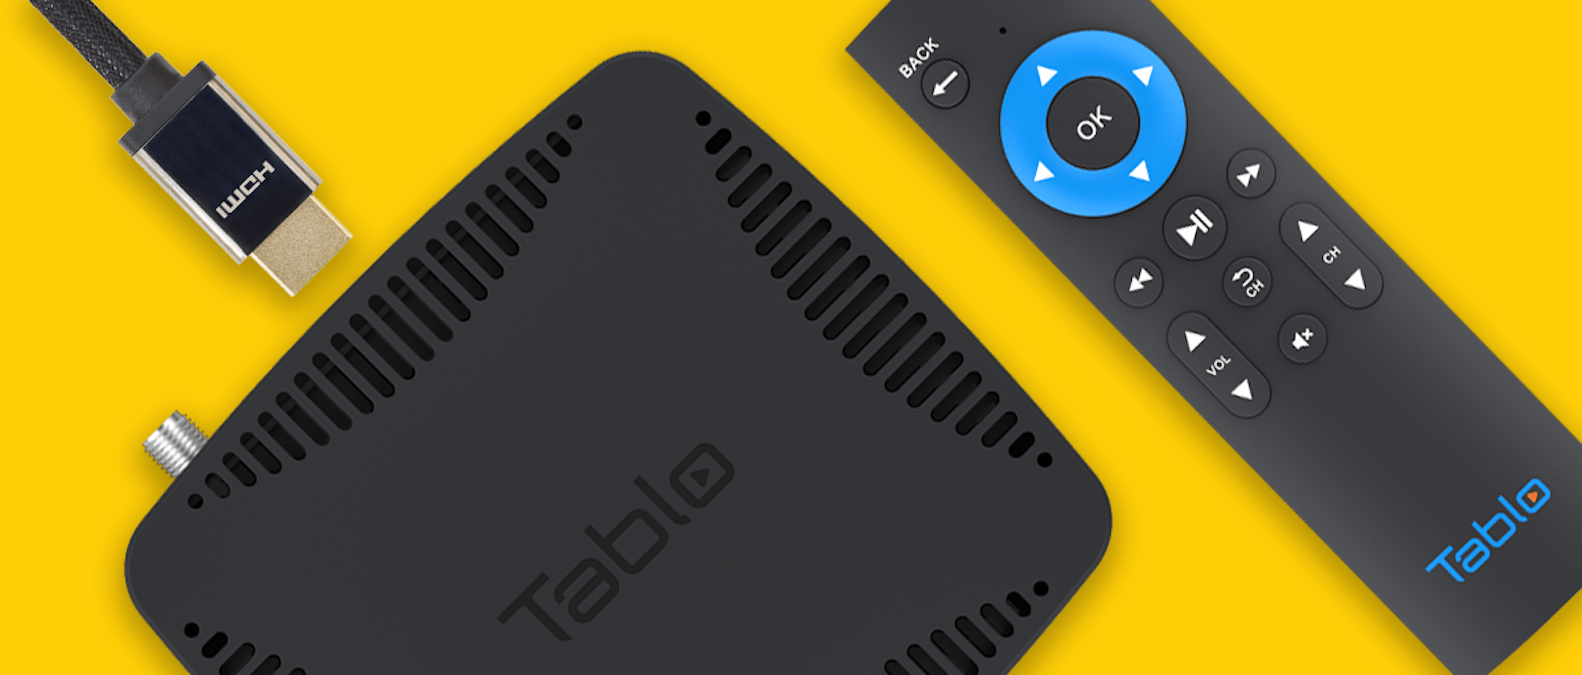 Tablo Launches HDMI Connected Tablo OTA DVR